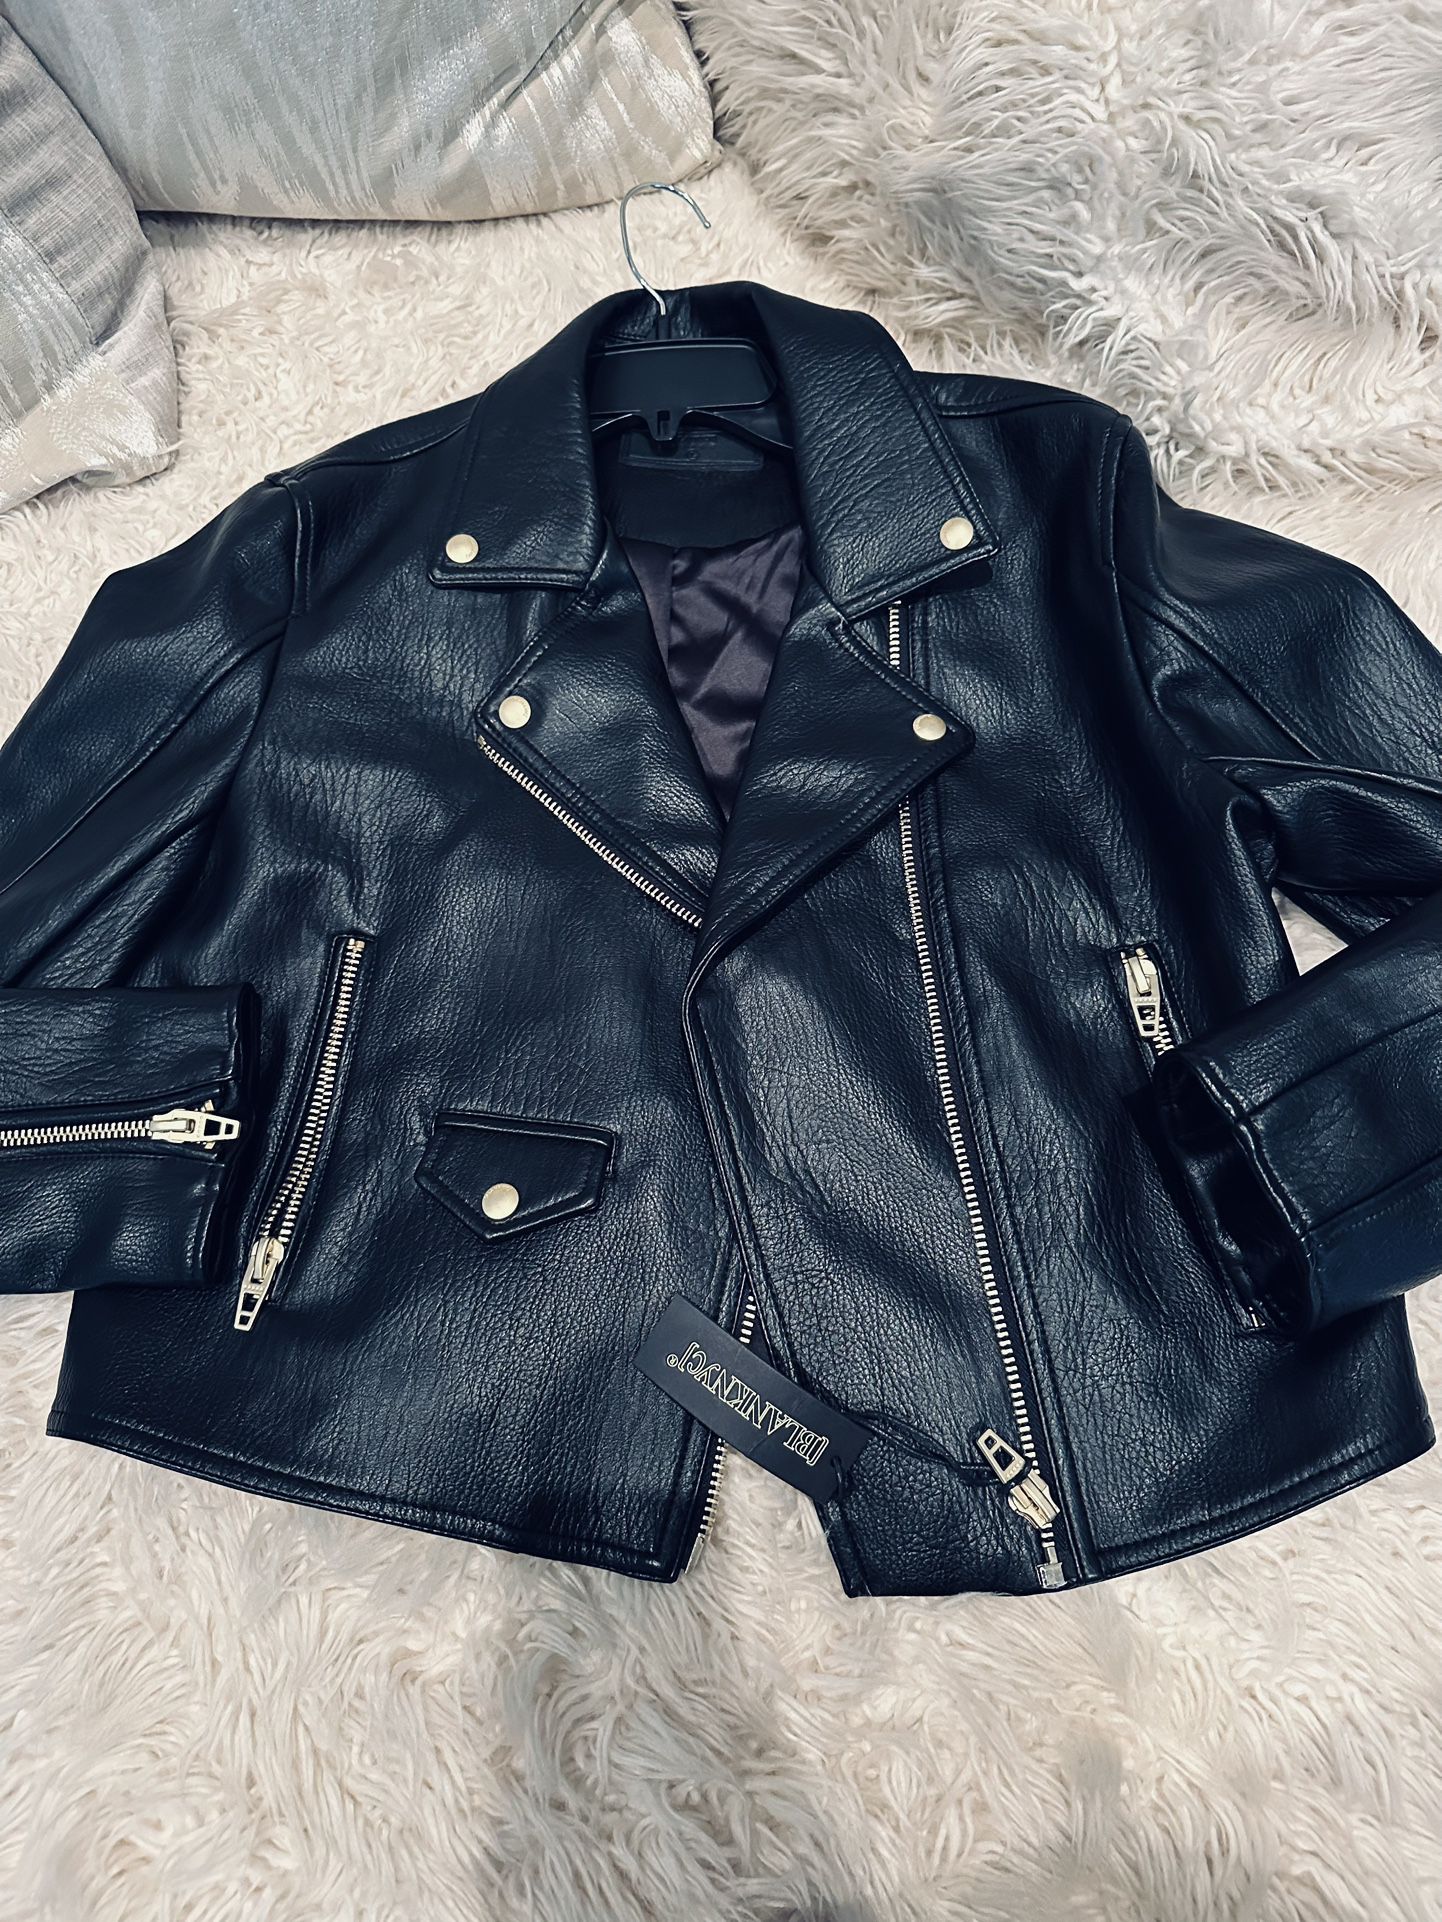 Blancknyc Leather Jacket Size L New